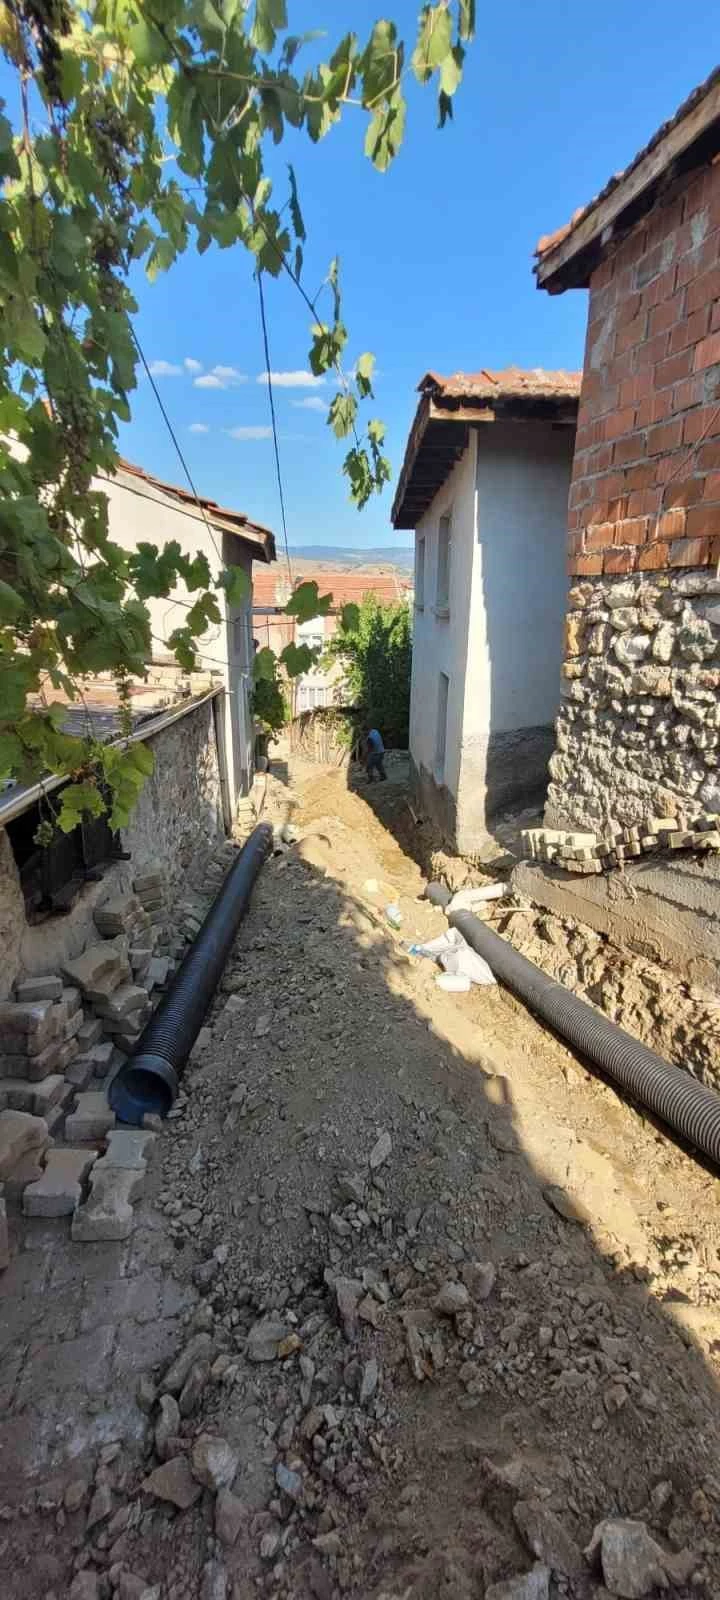 İnhisar’da kanalizasyon yenileme çalışması yapıldı
